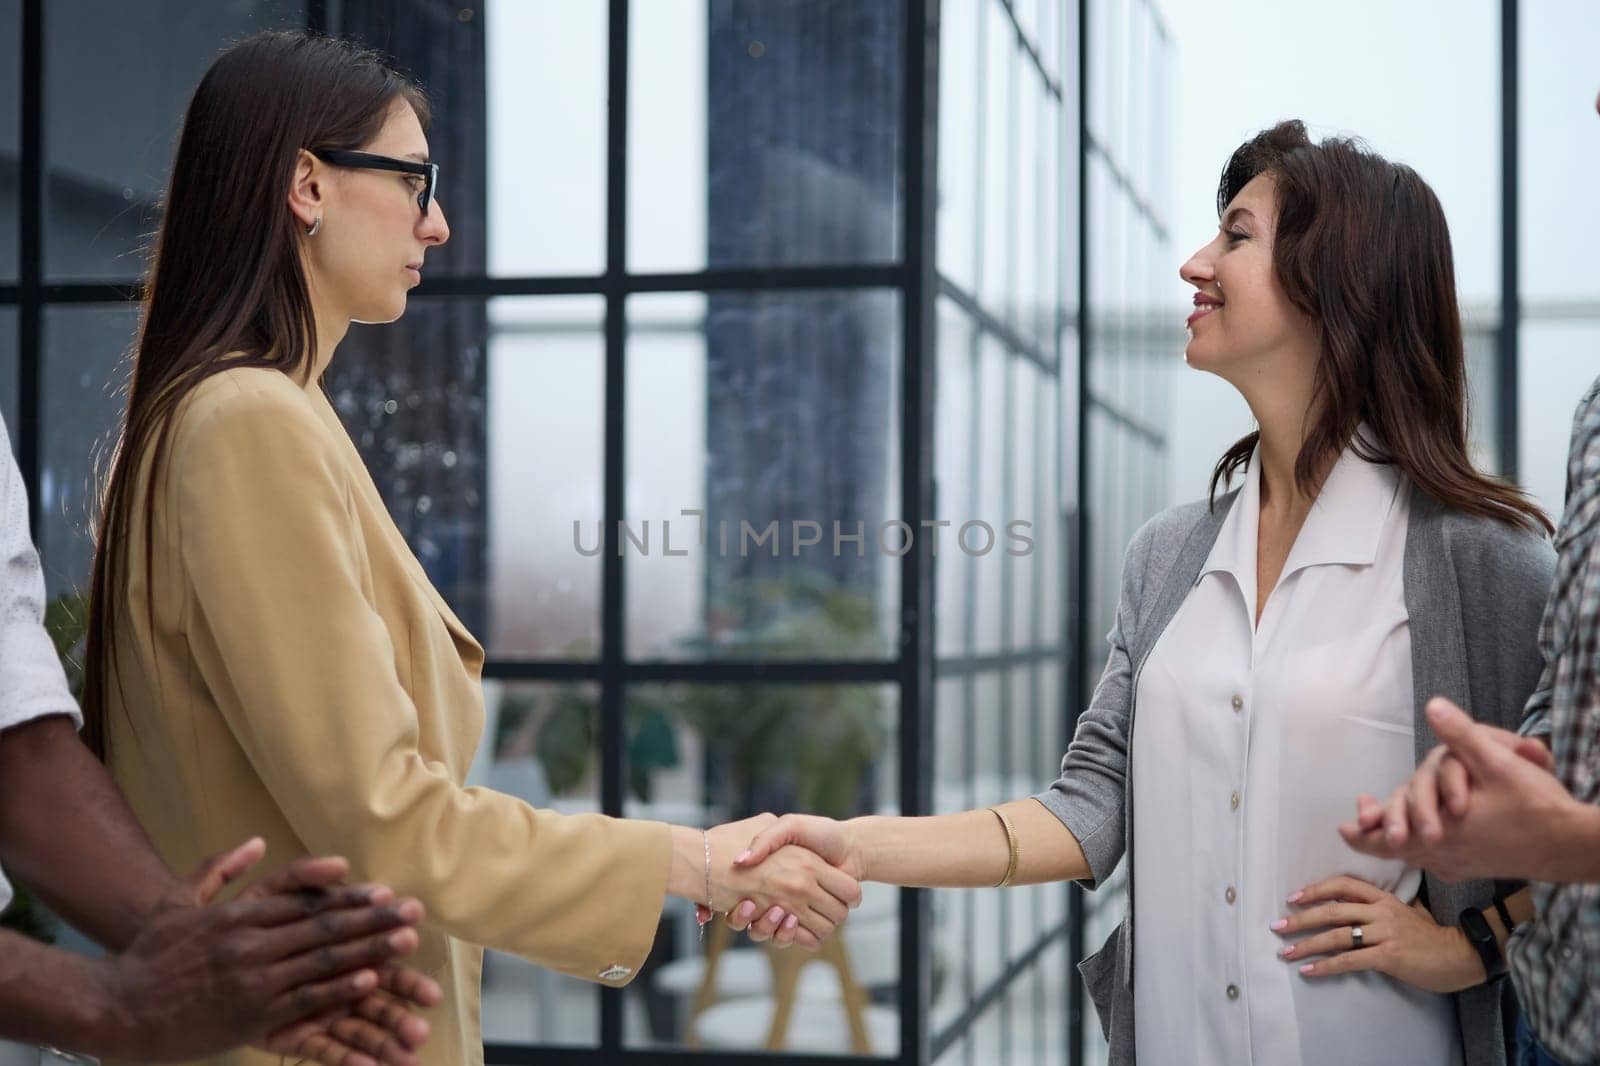 Two Businesswomen Shaking Hands In Modern Office